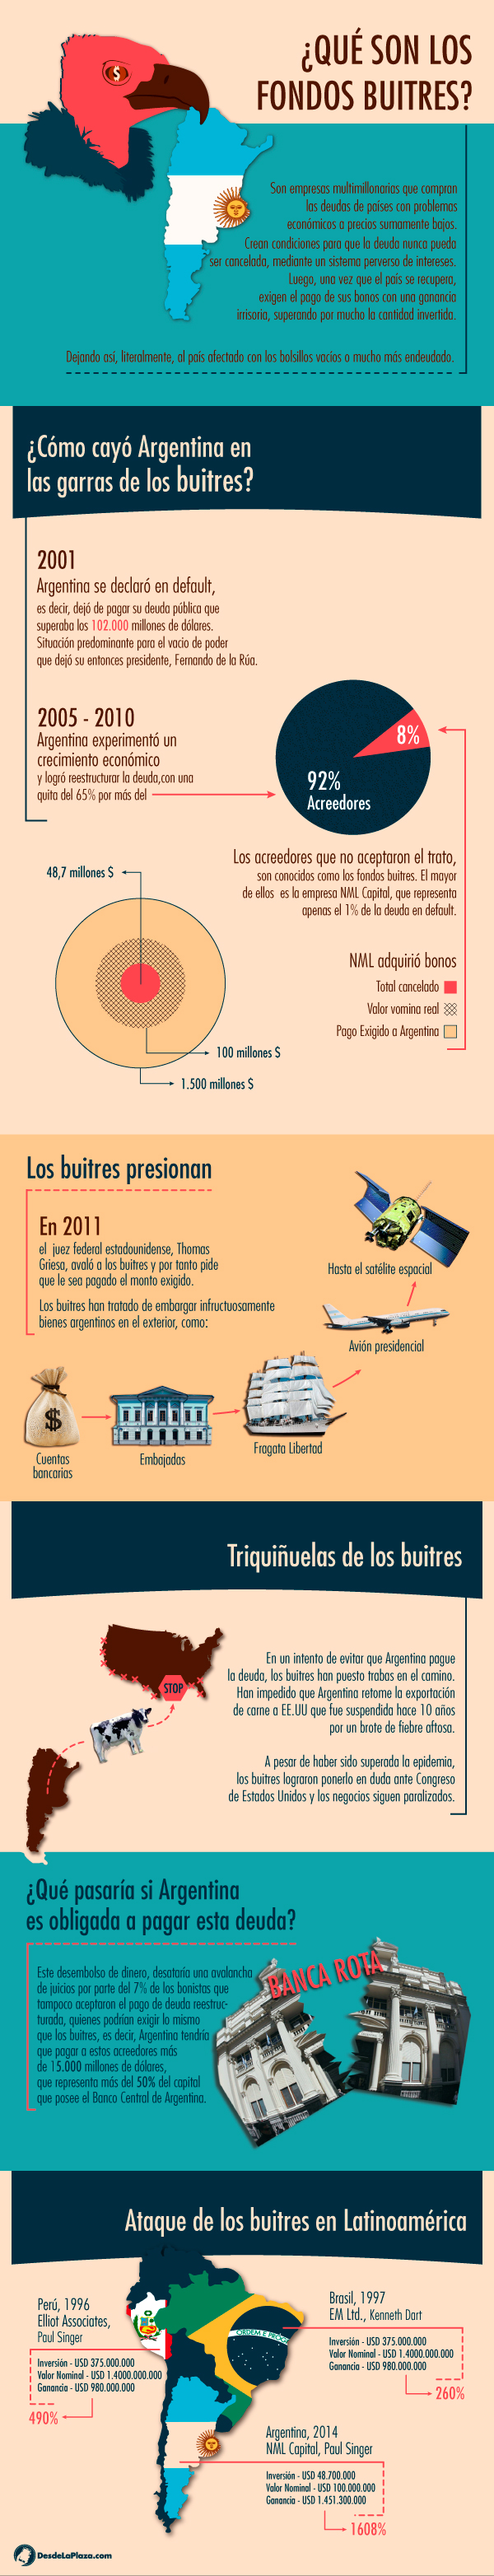 Fondos Buitres Infografía Desde La Plaza